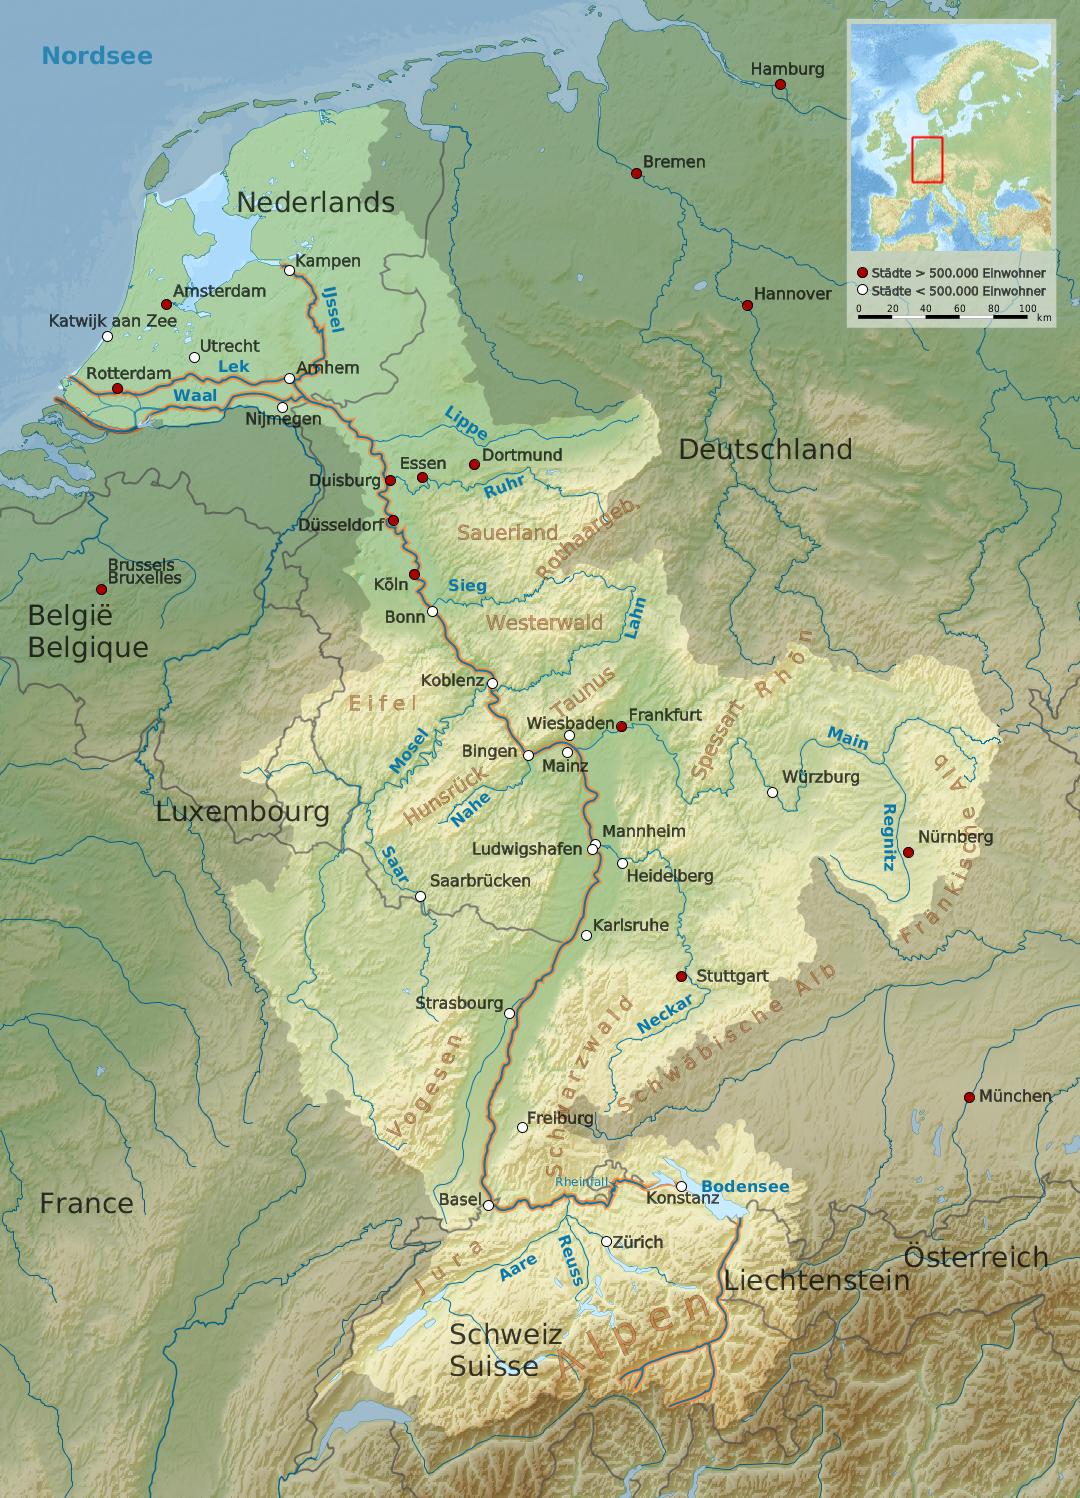 Verlauf des Rheines durch mehrere Länder und entlang vieler Orte